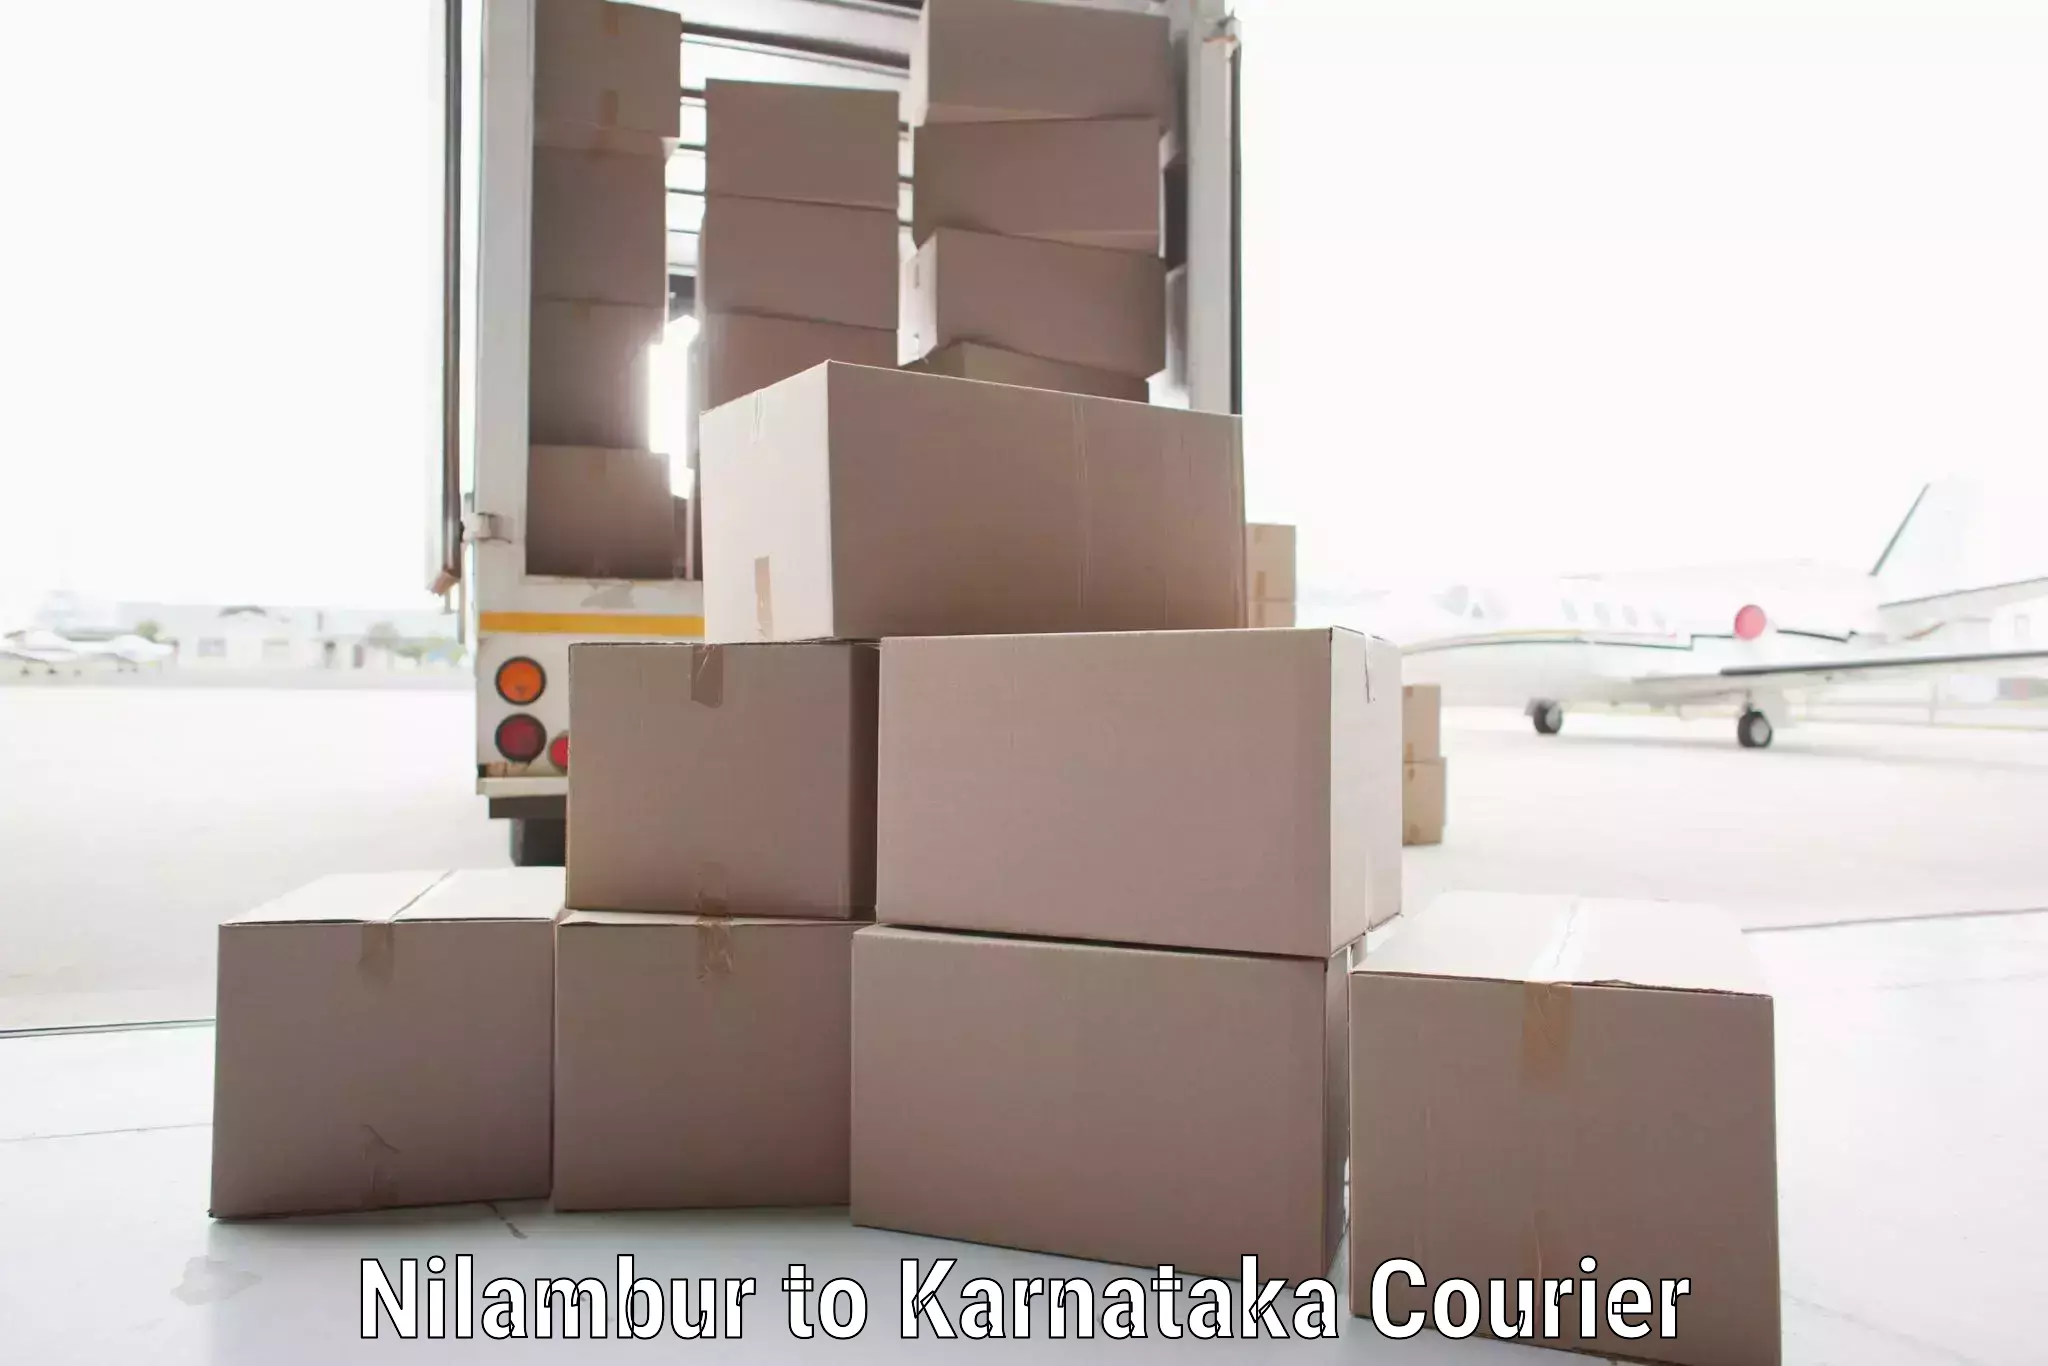 Local delivery service Nilambur to Mangalore Port